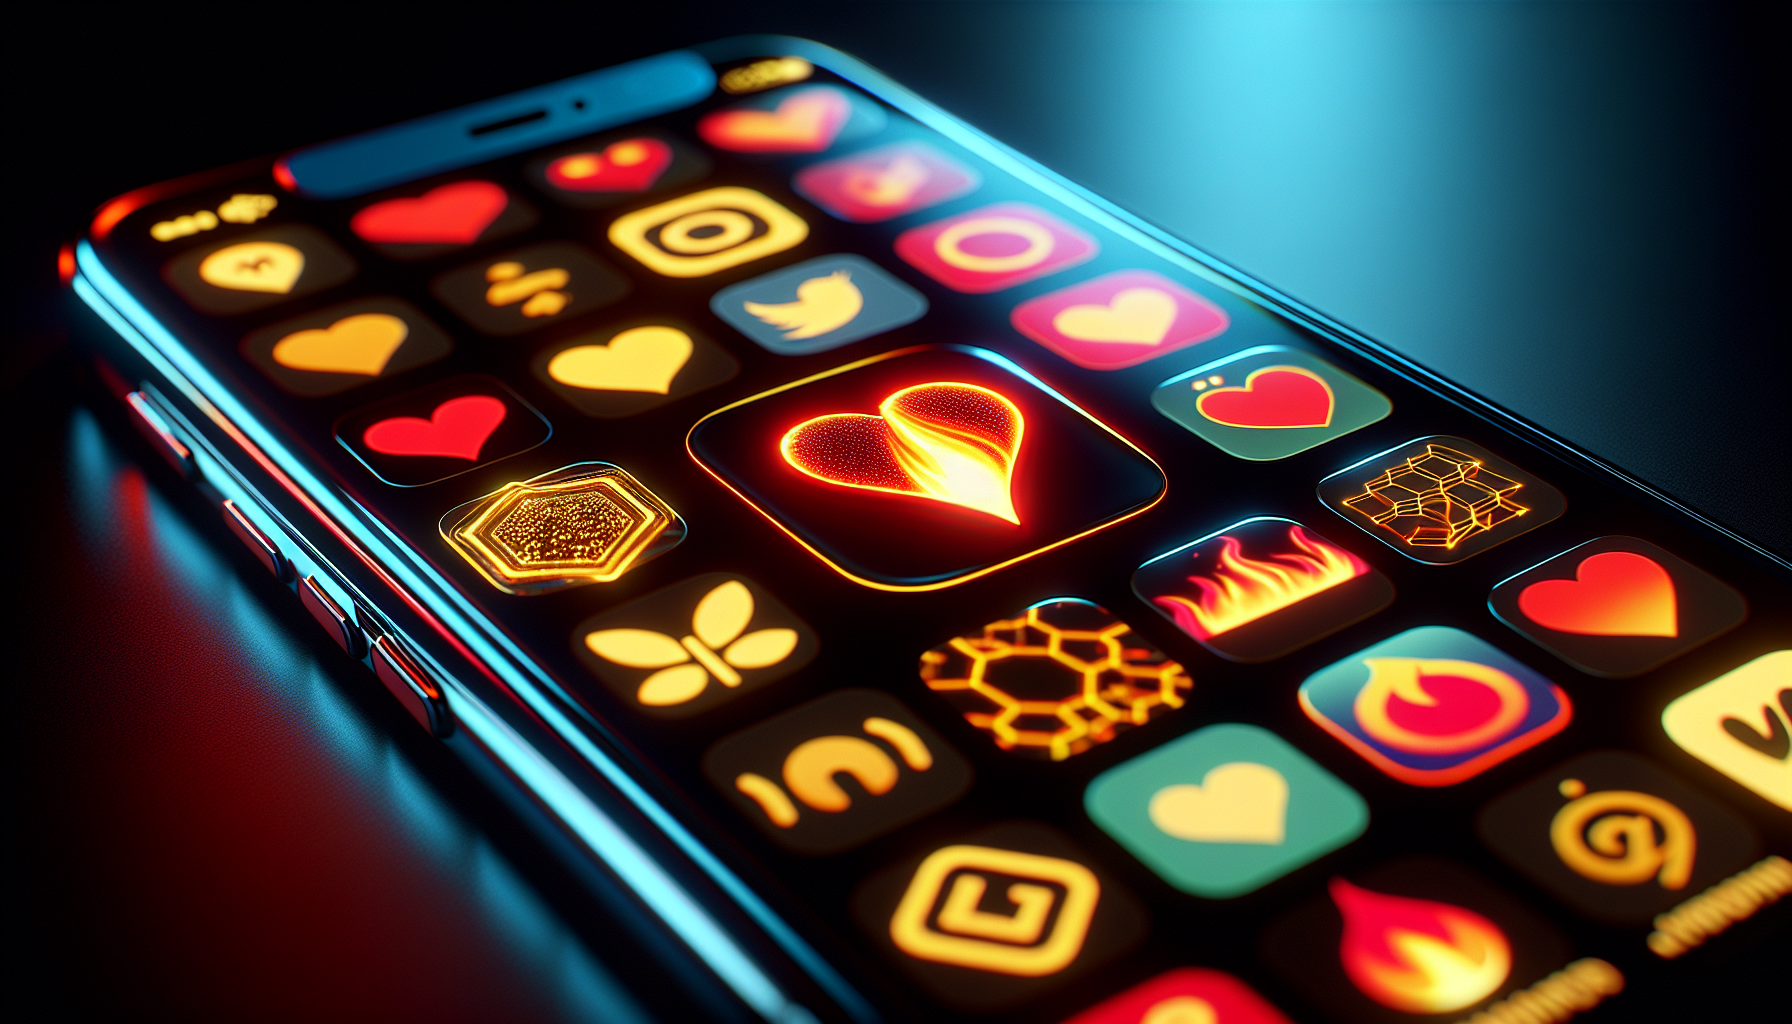 Eine Illustration von verschiedenen Dating-App-Symbolen auf einem Smartphone-Bildschirm